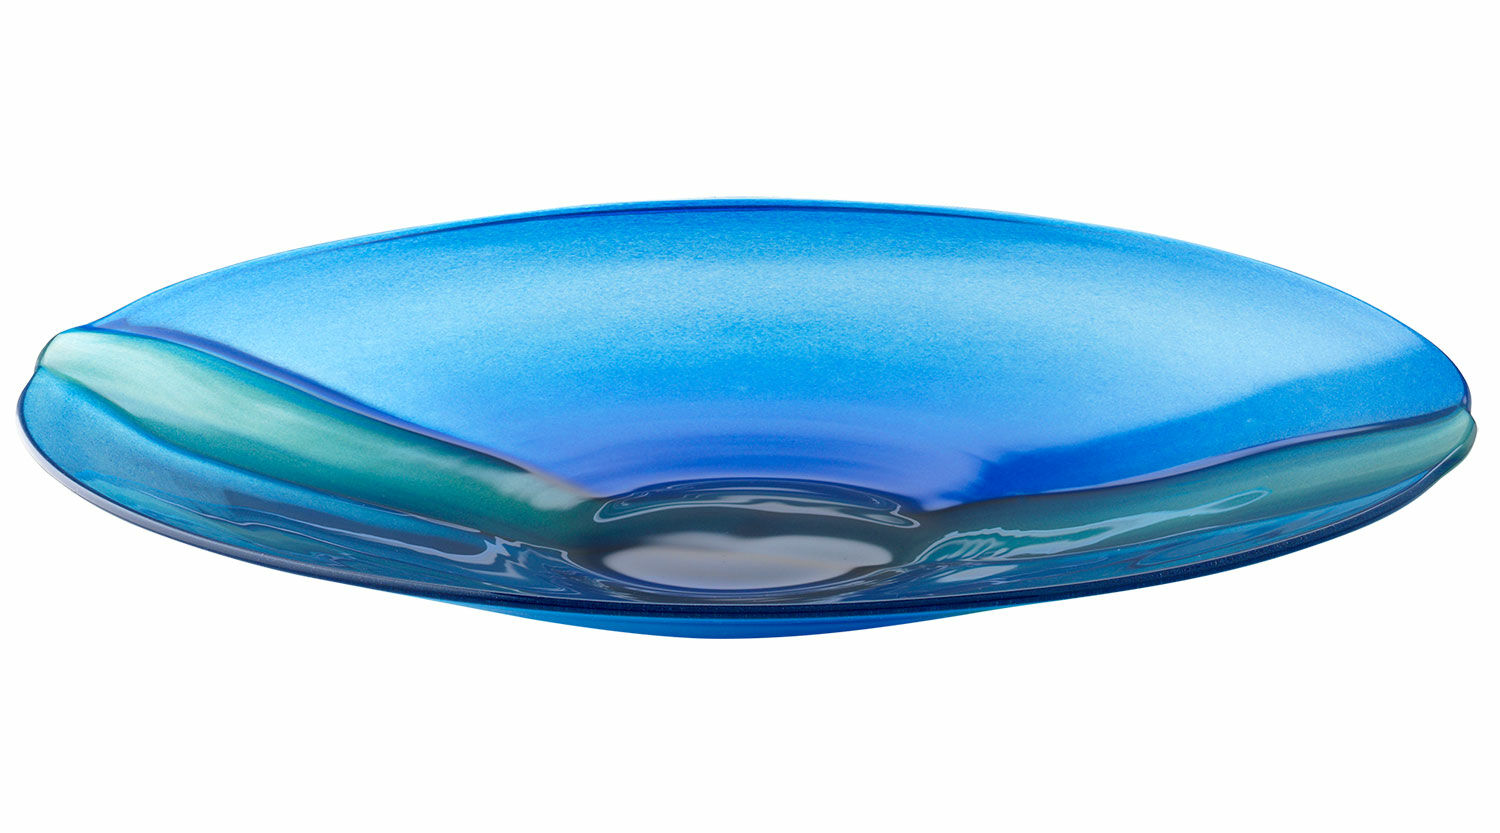 Glass bowl "Symphony in Blue" by Bernhard Schagemann